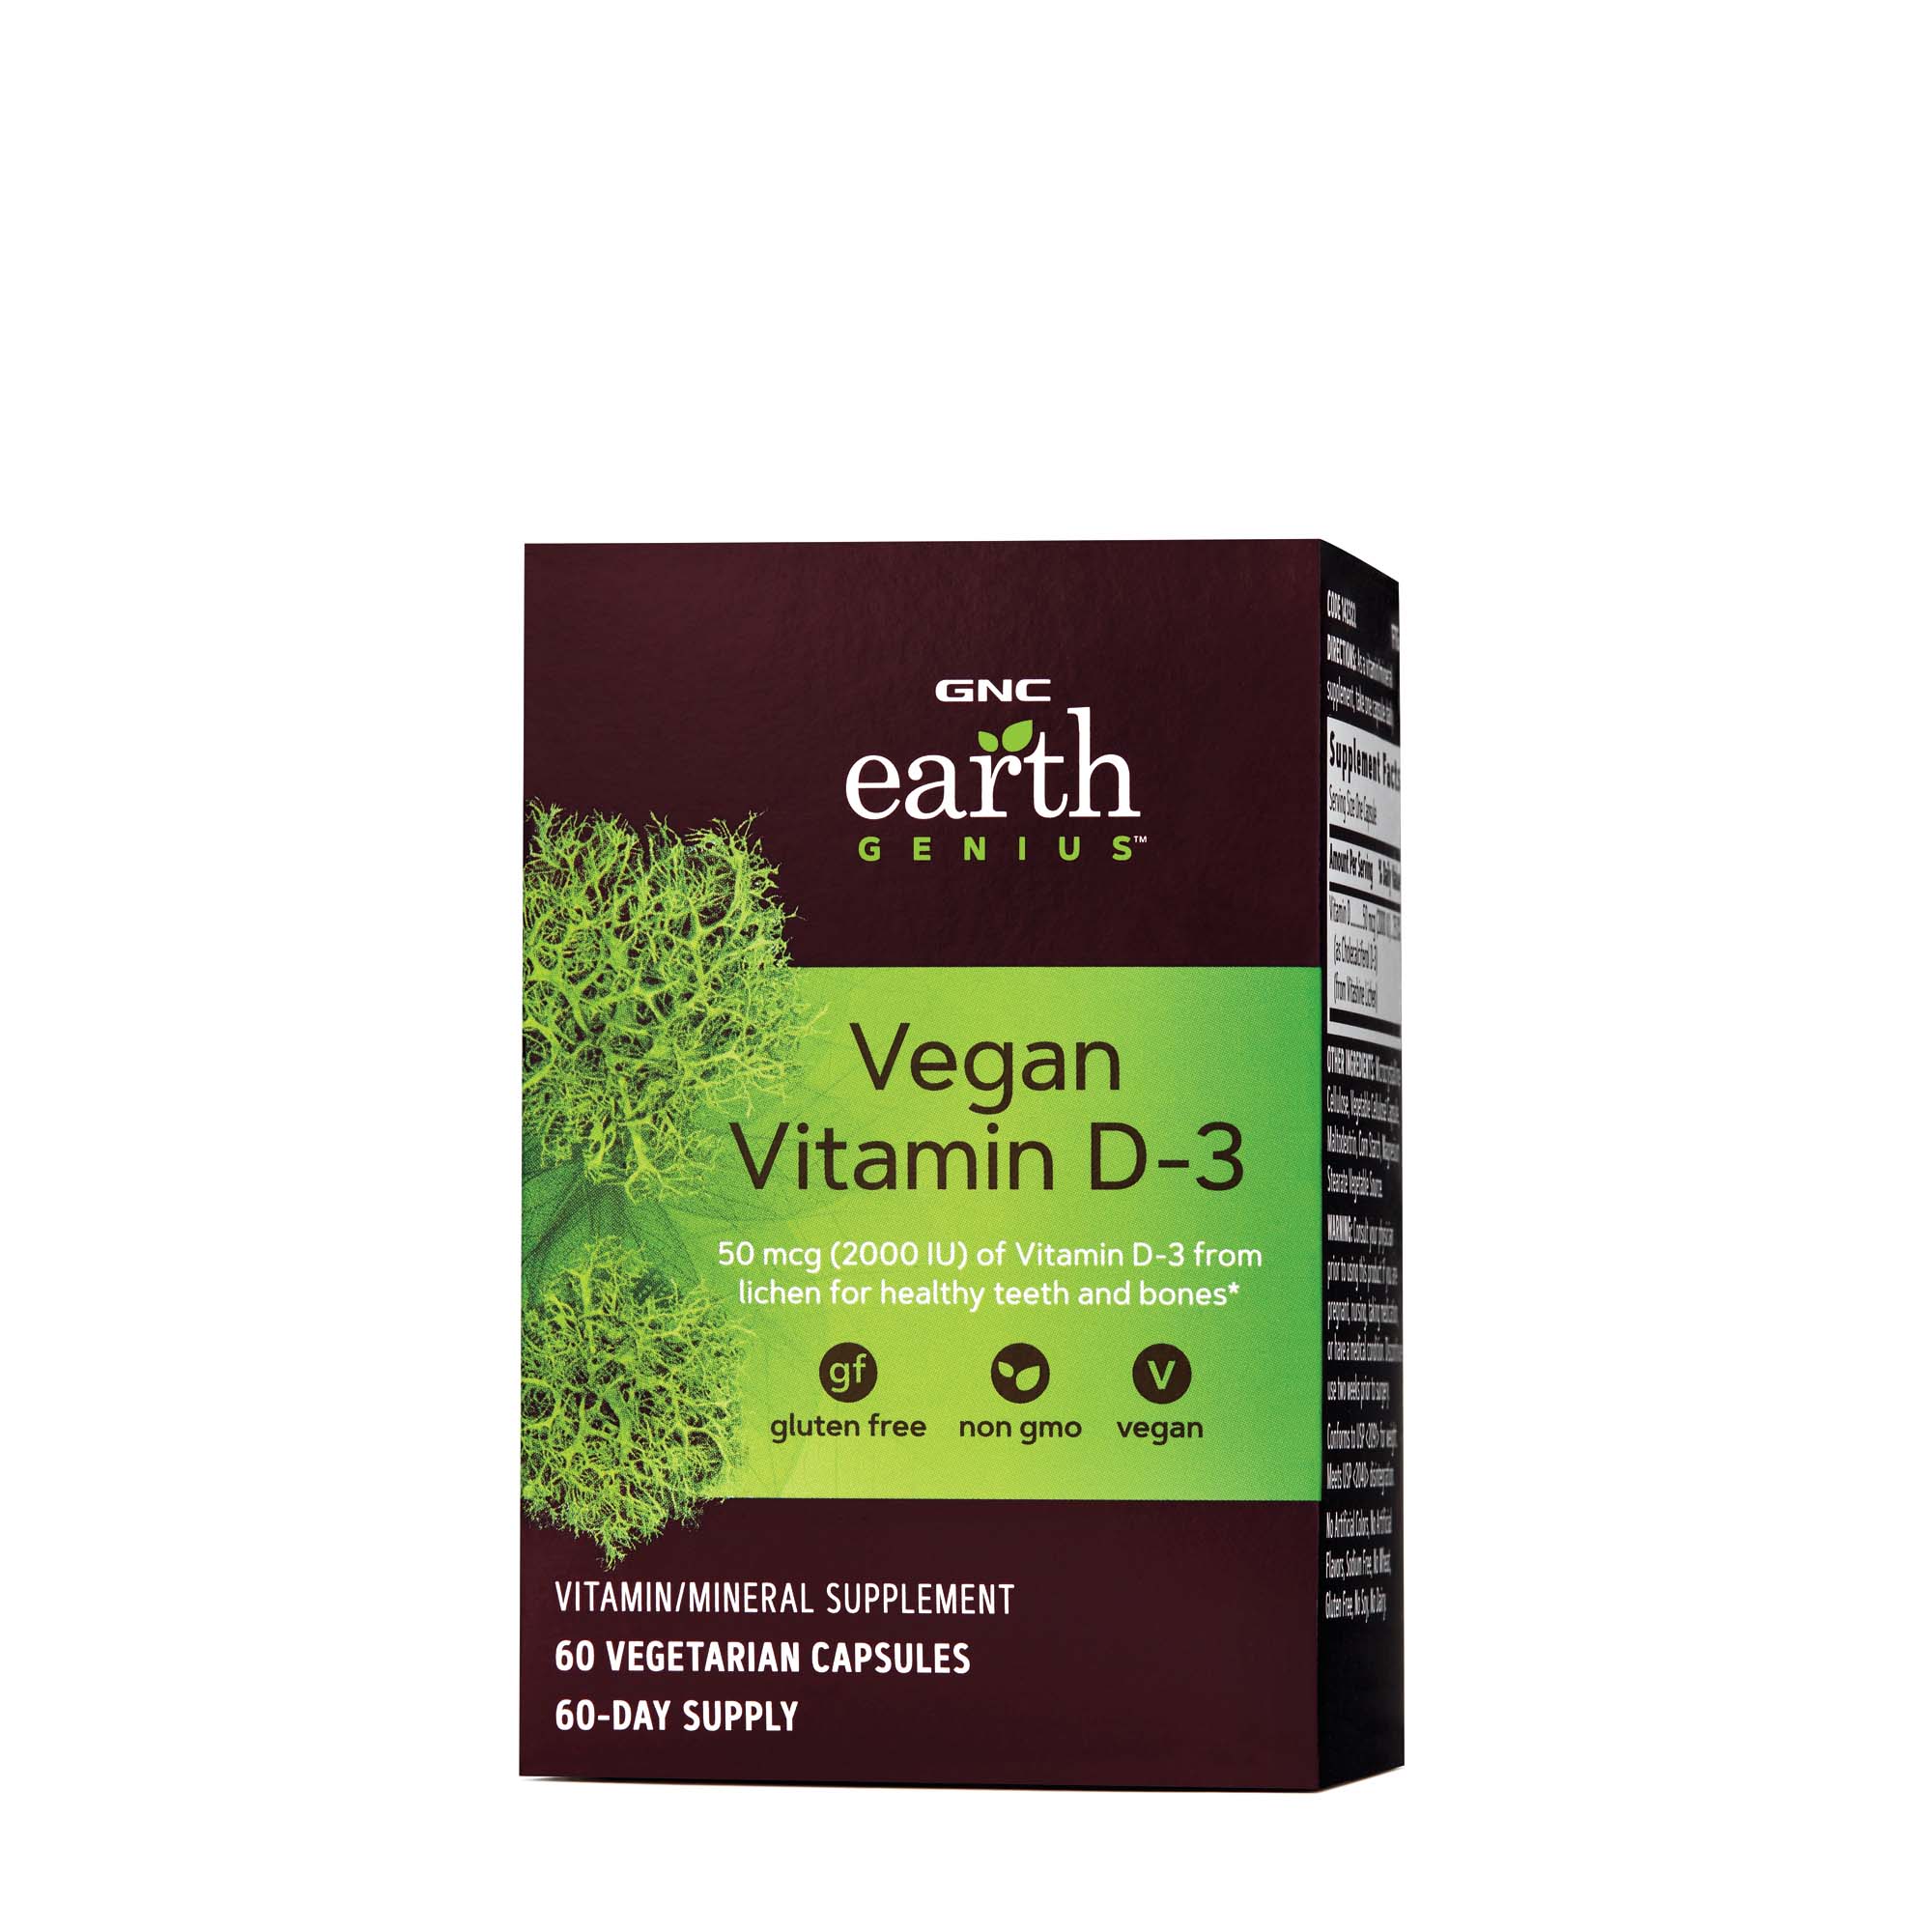 Vegan Vitamin D 3